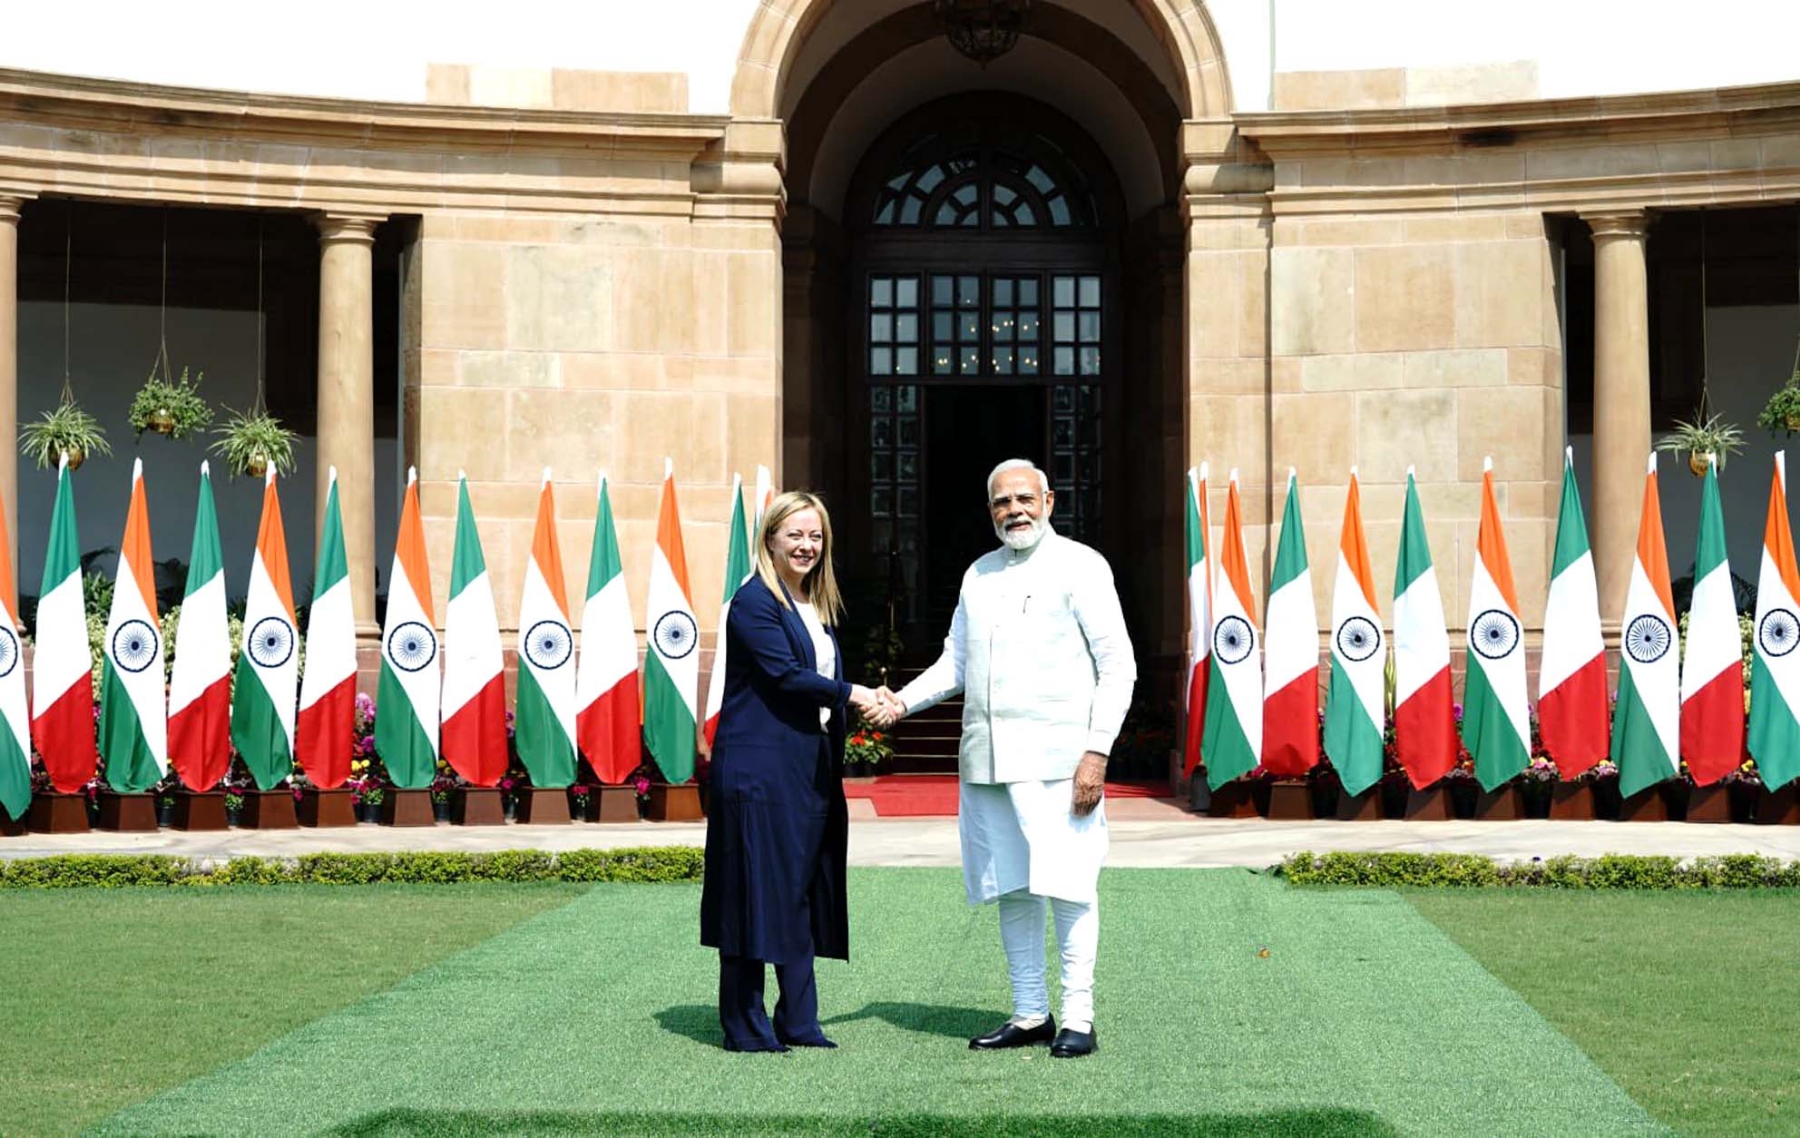 नई दिल्ली में गुरुवार 2 मार्च 2023 को हैदराबाद हाउस में प्रधानमंत्री नरेंद्र मोदी और इटली की प्रधानमंत्री सुश्री जियोर्जिया मेलोनी के बैंठक से पहले हाथ मिलाते हुए। हिन्दुस्थान समाचार/ फोटो गणेश बिष्ट